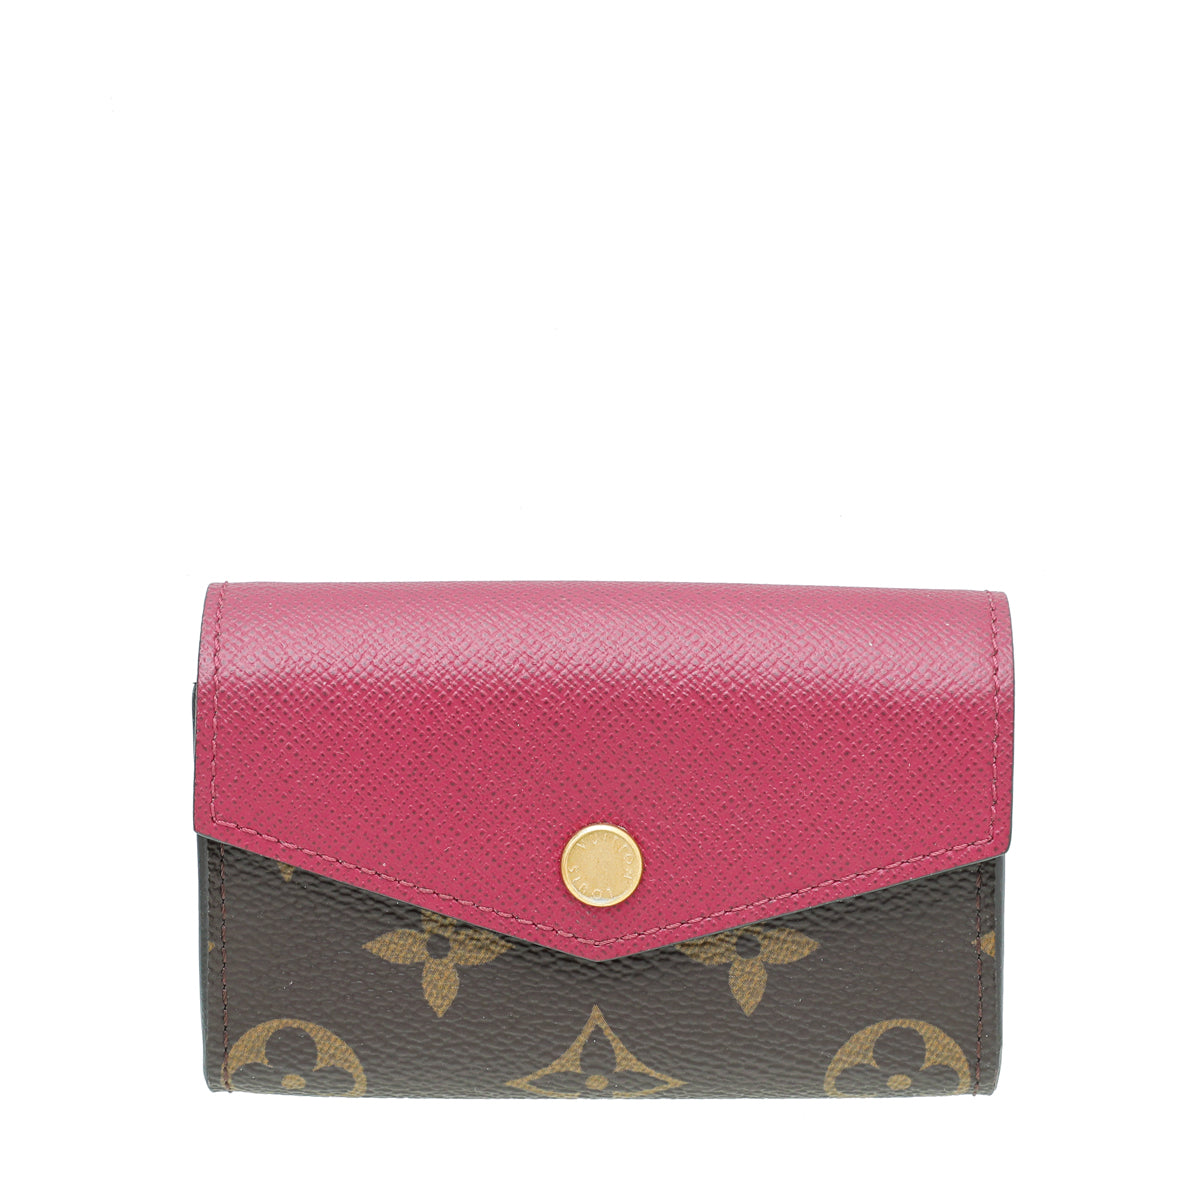 Louis Vuitton lv emilie wallet monogram with burgundy pink interior in 2023